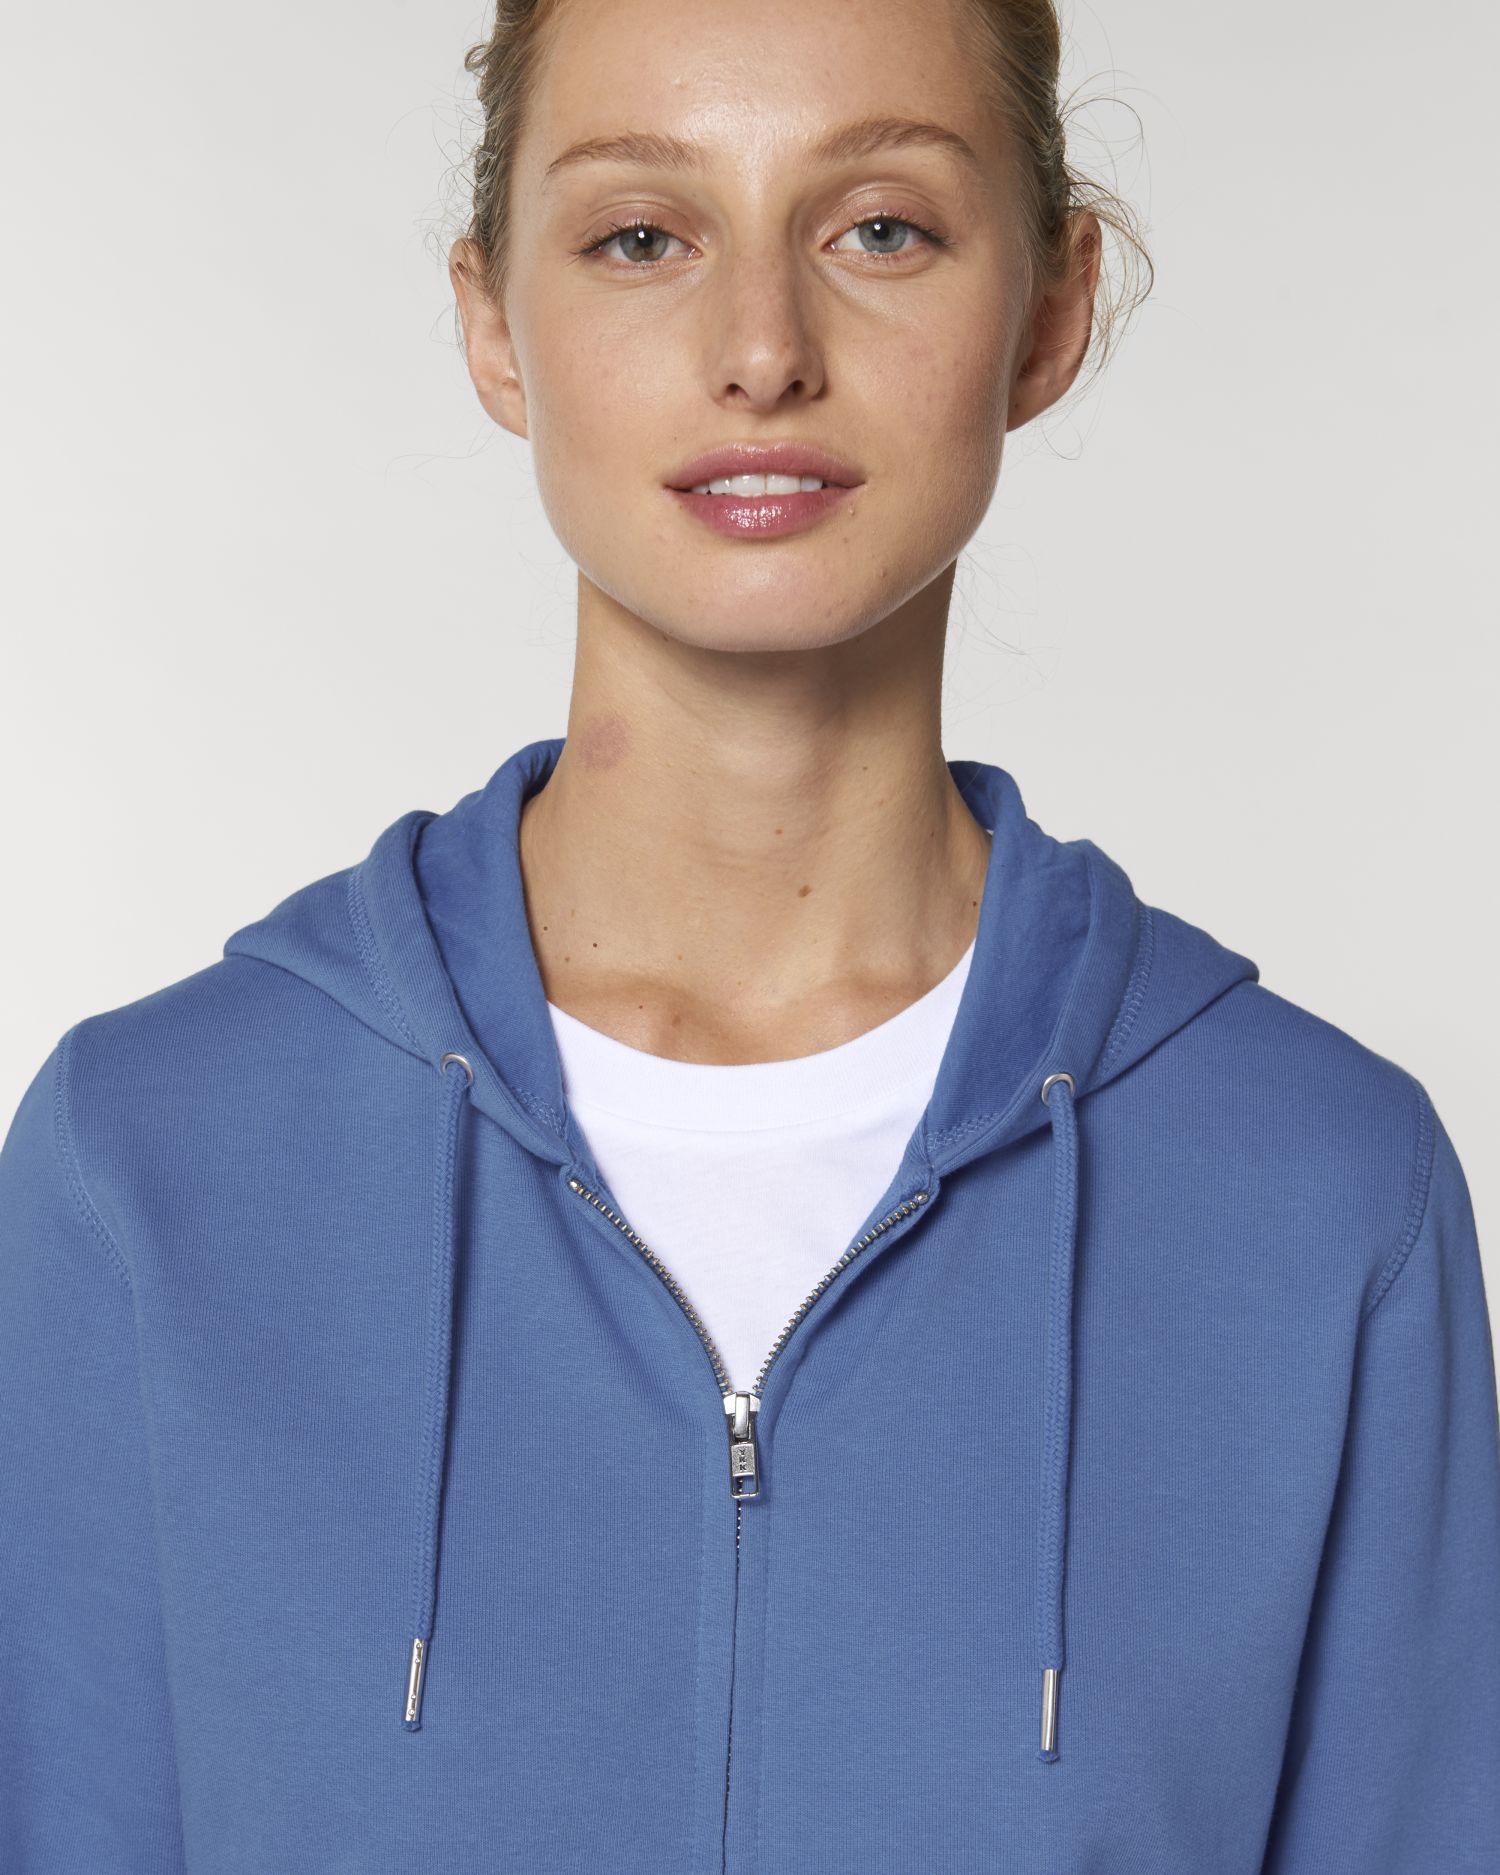 Zip-thru sweatshirts Connector in Farbe Bright Blue